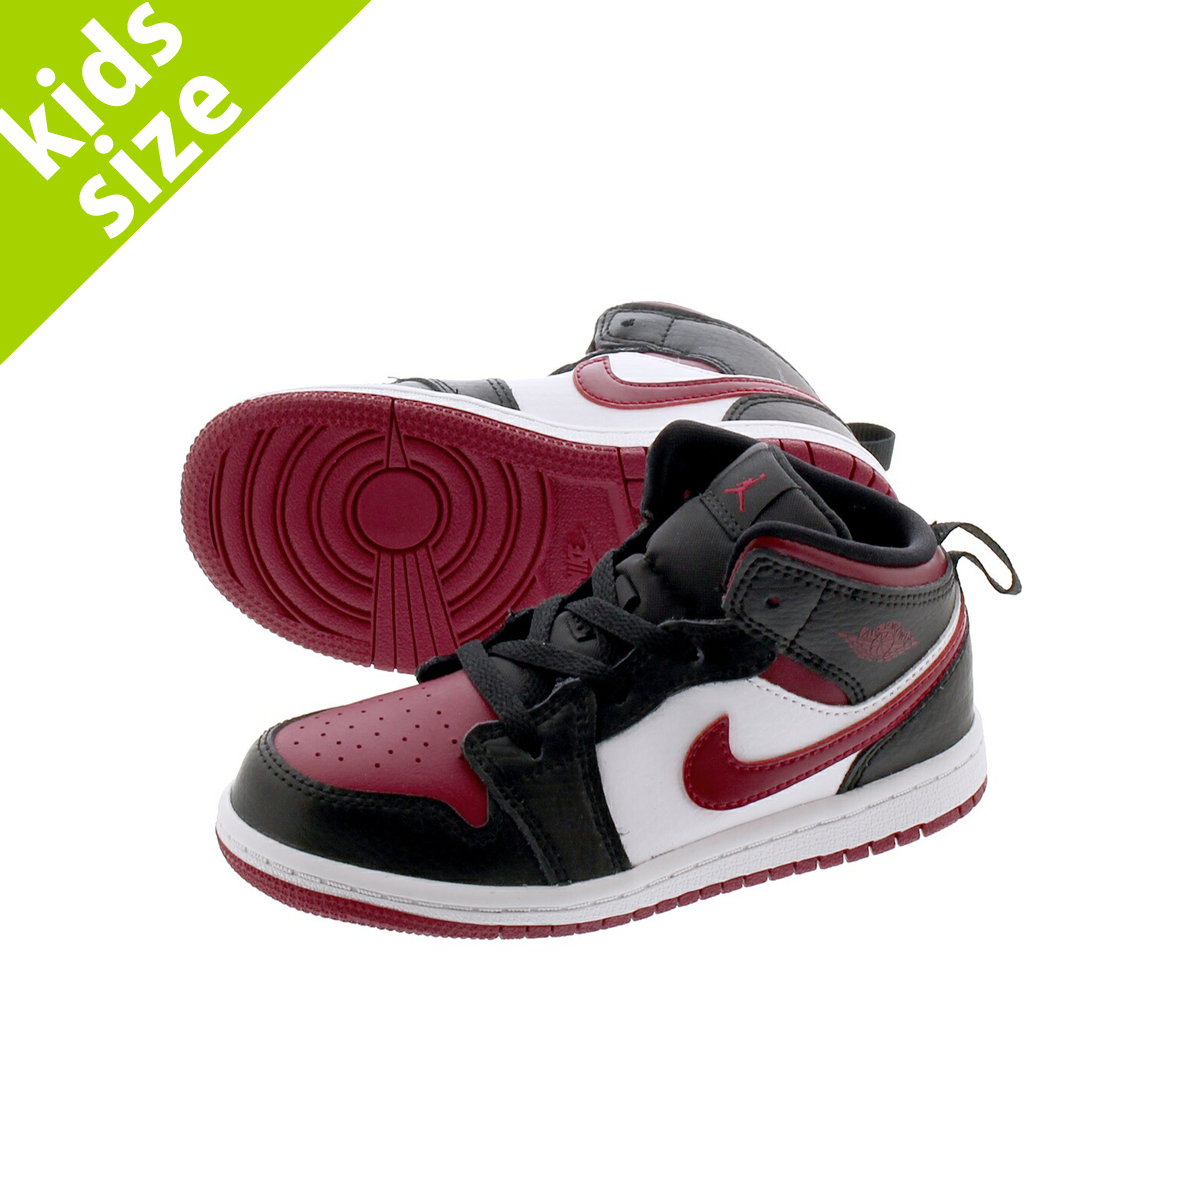 楽天市場 キッズサイズ 8 0 16 0cm Nike Air Jordan 1 Mid Td ナイキ エア ジョーダン 1 ミッド Td Black Noble Red White 066 Lowtex Plus